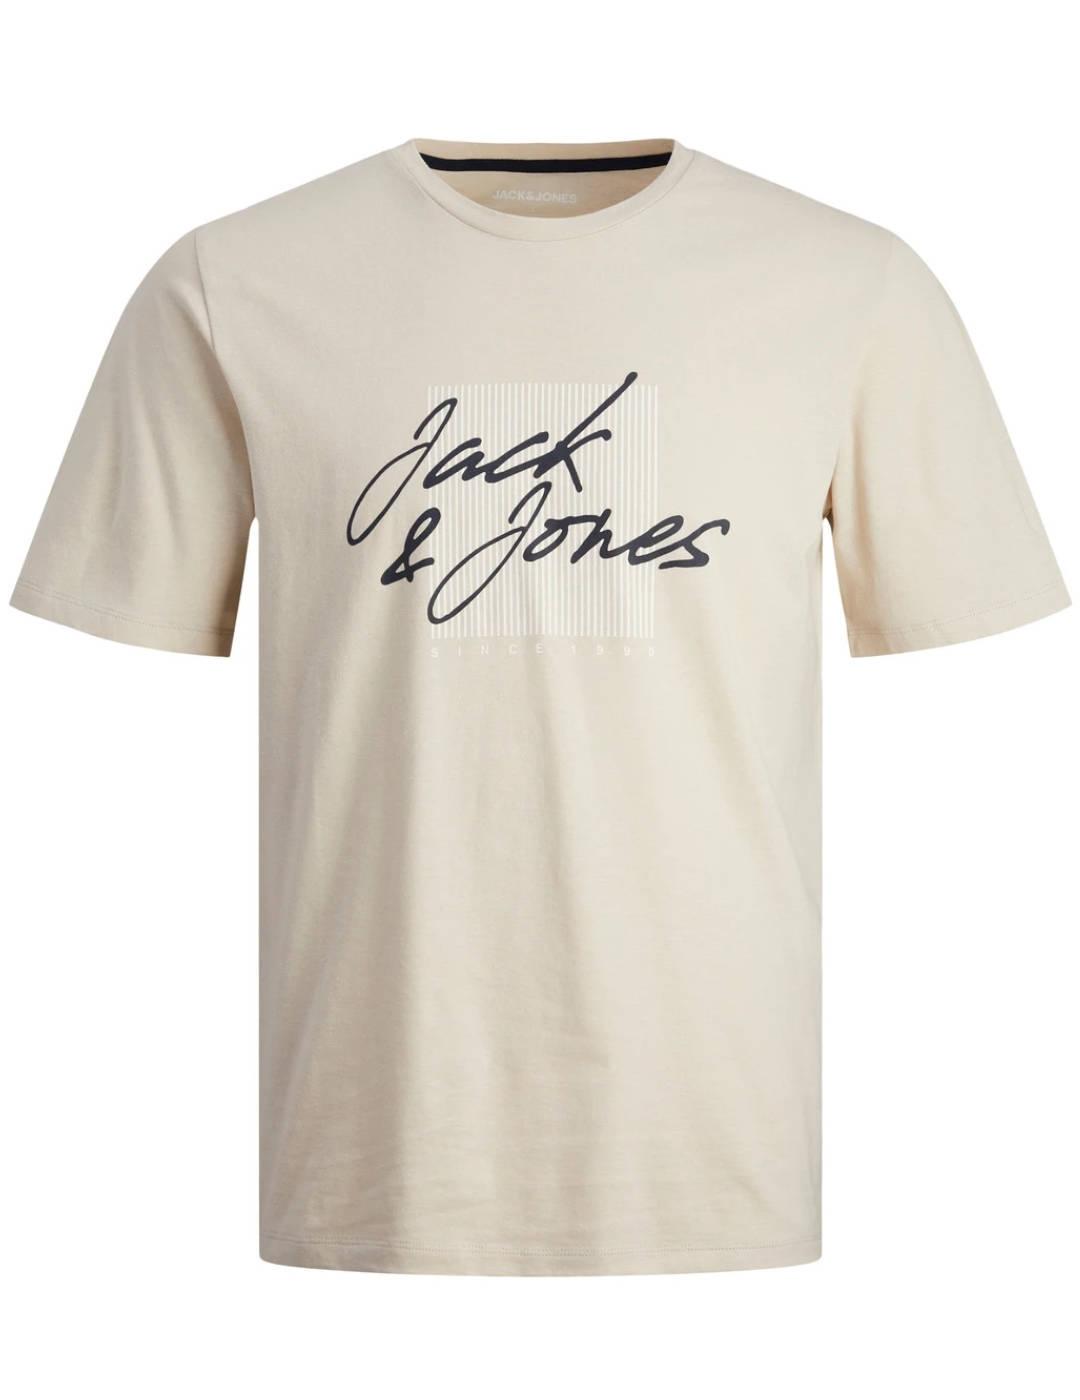 Camiseta Jack&Jones Zuri beige manga corta para hombre